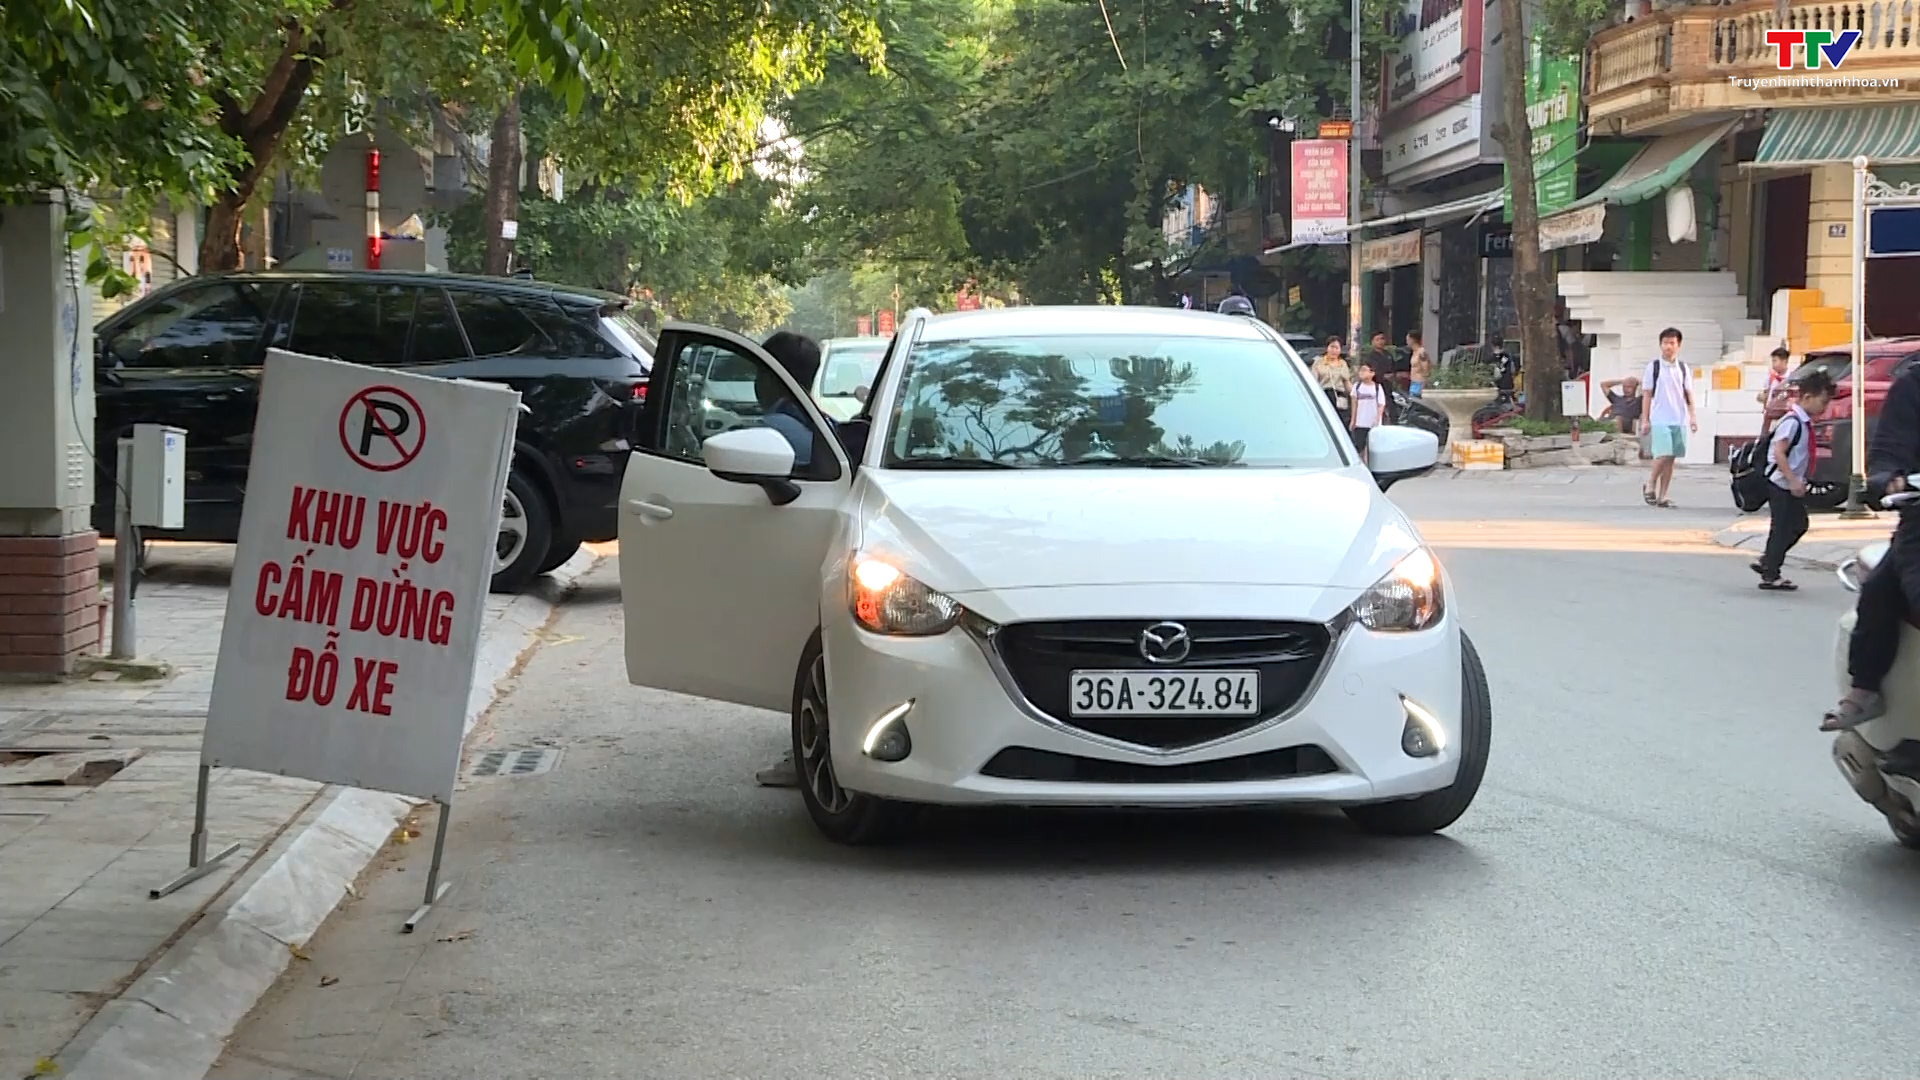 Cần có giải pháp chấn chỉnh tình trạng dừng, đỗ xe sai quy định tại thành phố Thanh Hoá  - Ảnh 2.